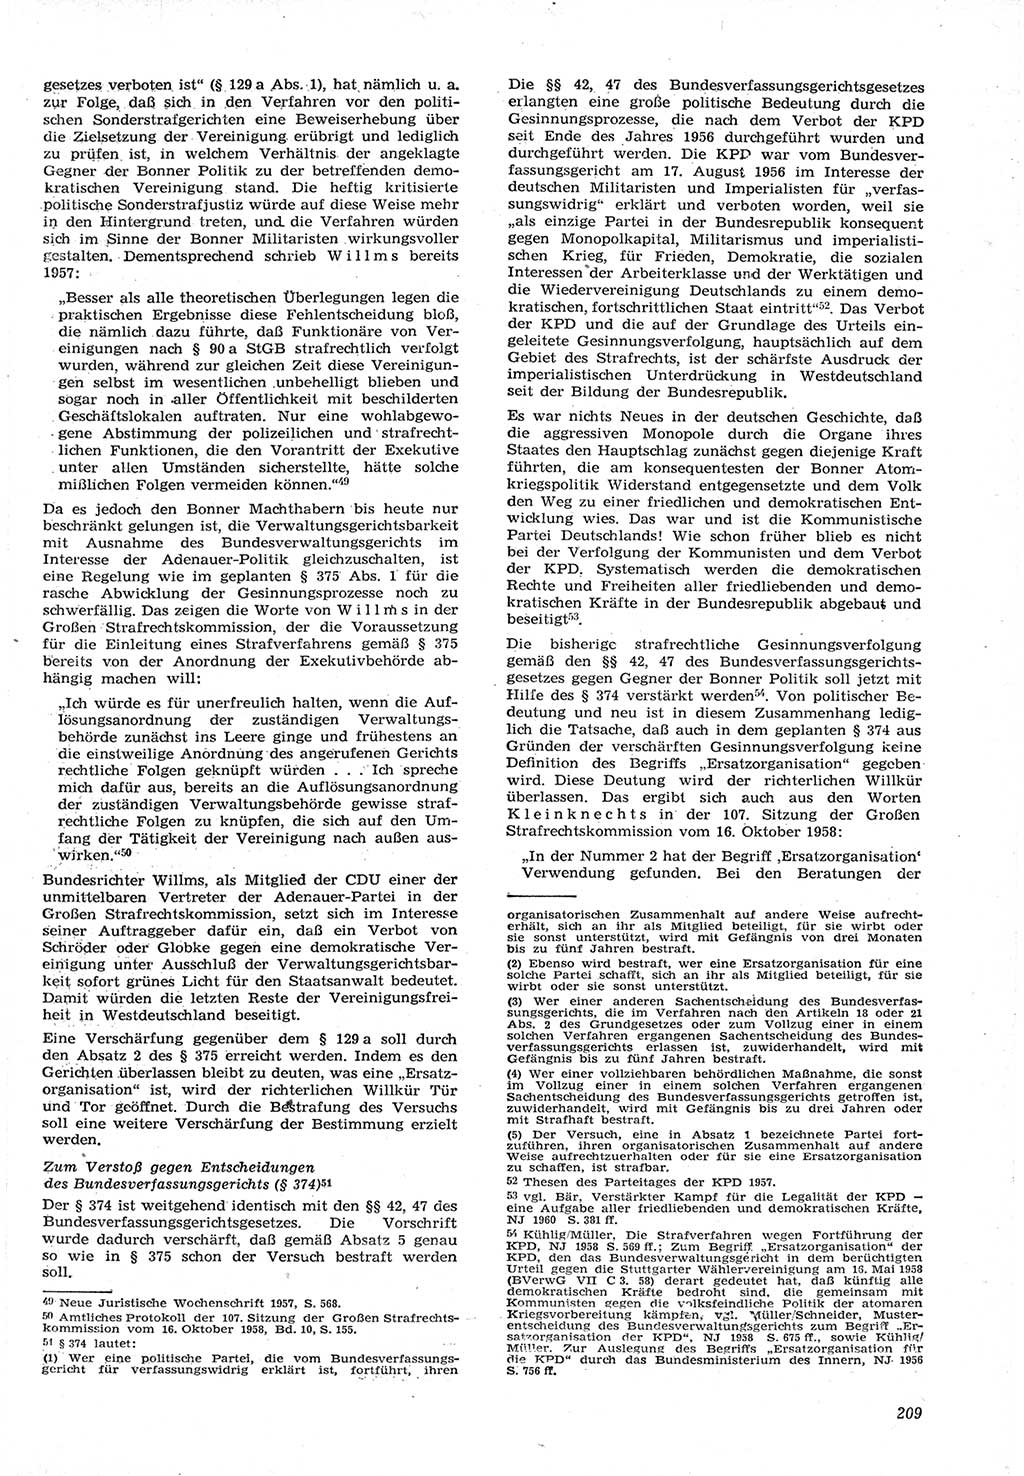 Neue Justiz (NJ), Zeitschrift für Recht und Rechtswissenschaft [Deutsche Demokratische Republik (DDR)], 15. Jahrgang 1961, Seite 209 (NJ DDR 1961, S. 209)